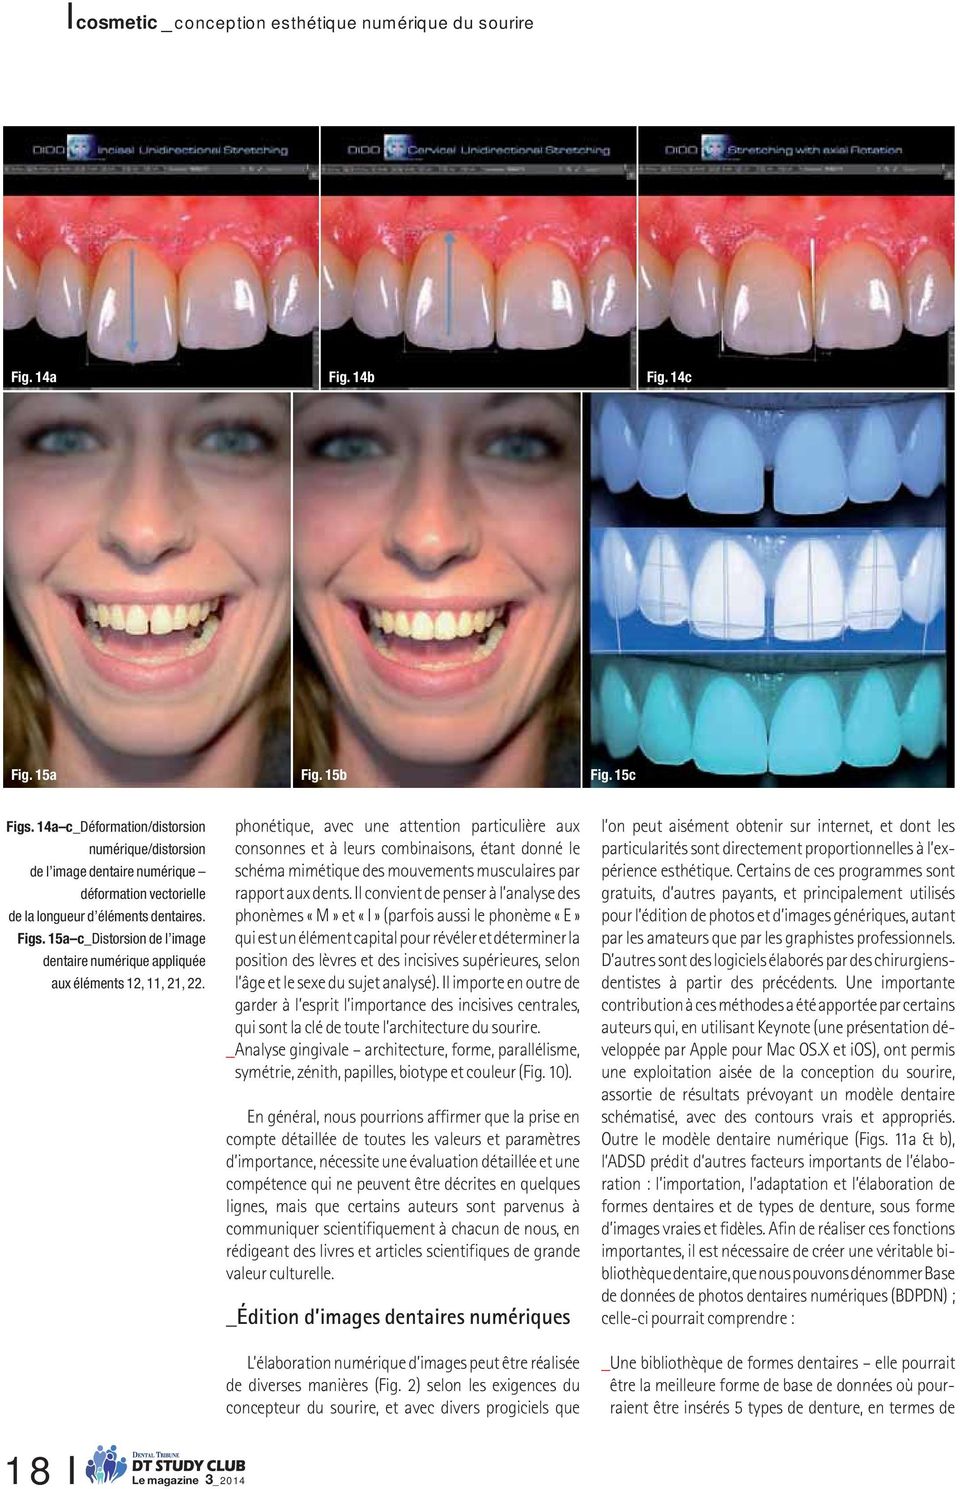 15a c_distorsion de l image dentaire numérique appliquée aux éléments 12, 11, 21, 22.